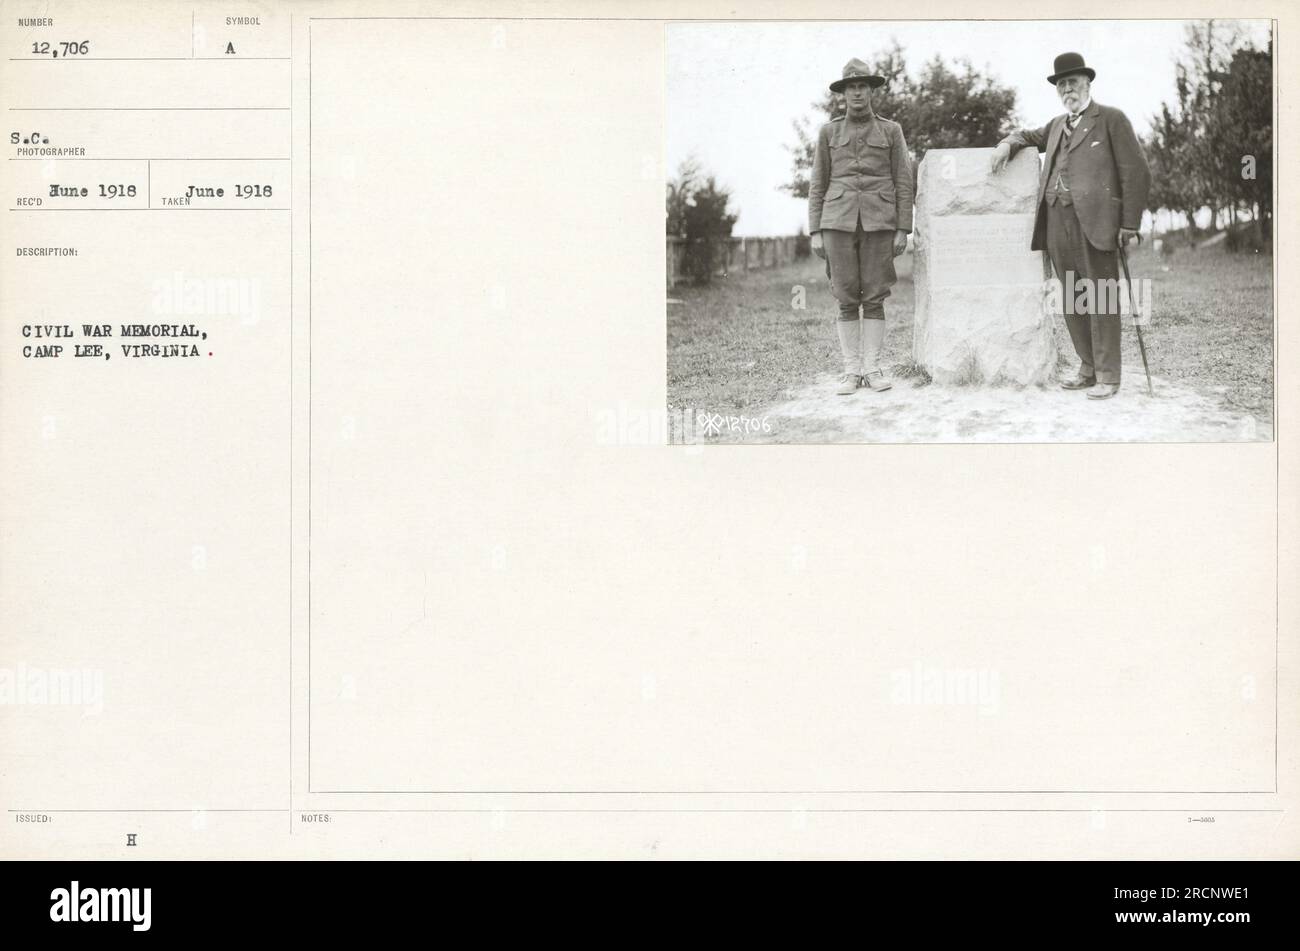 Soldats debout avec des drapeaux devant un mémorial de la guerre de Sécession à Camp Lee, Virginie. La photo a été prise en 1918. Note : 12706 indique le numéro de la photographie et 3m dist suggère une distance de 3 mètres entre le photographe et le sujet. Banque D'Images